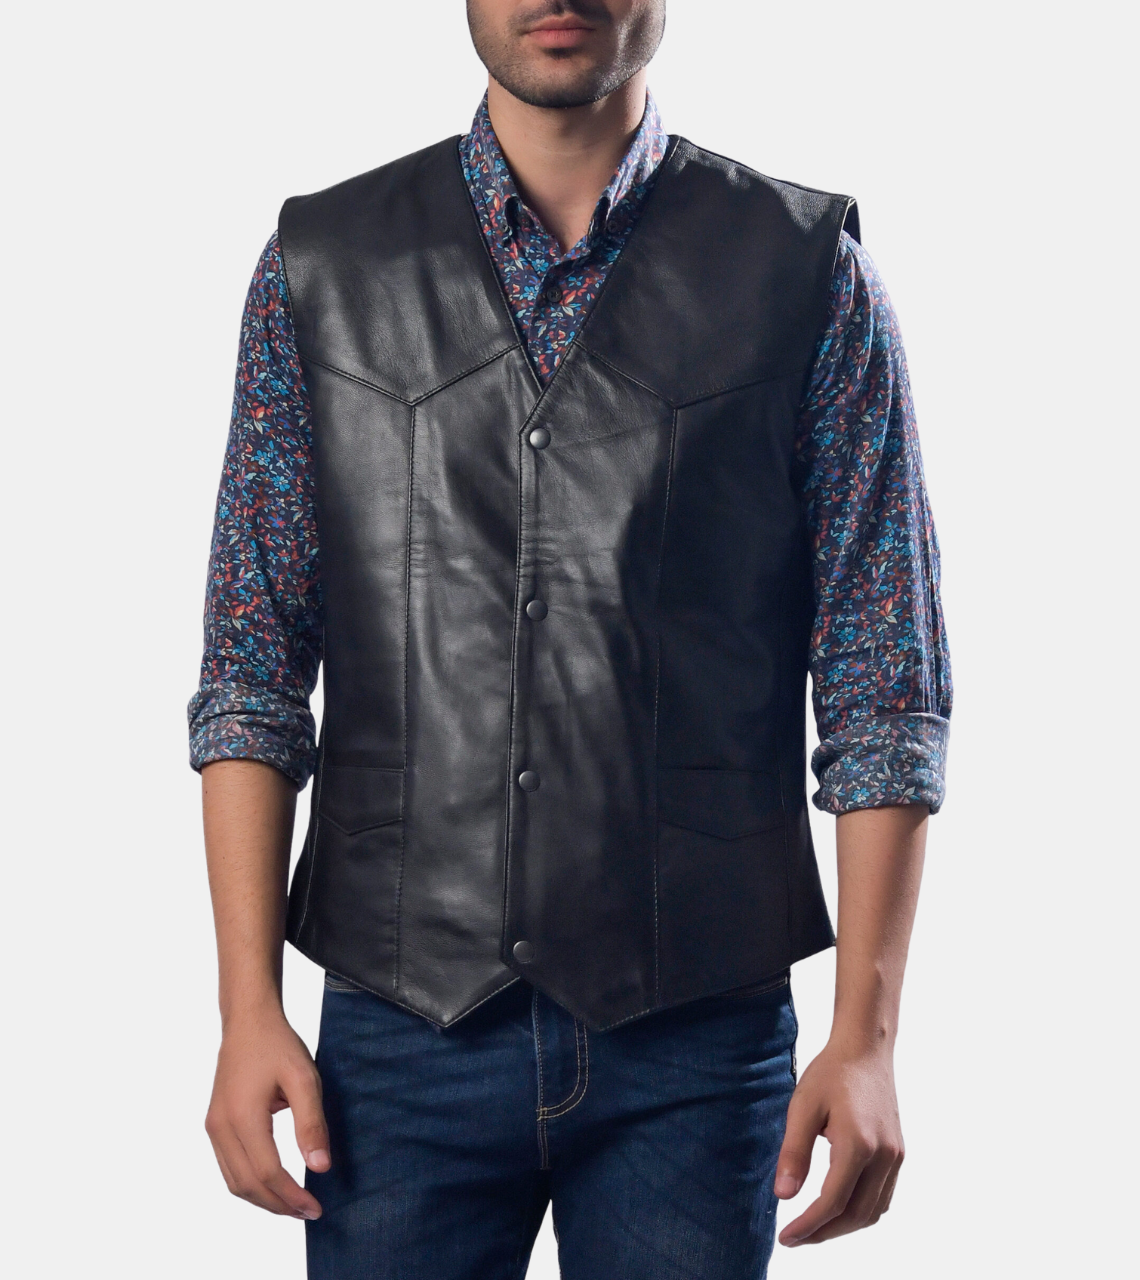  Marcel Men's Black Leather Vest 